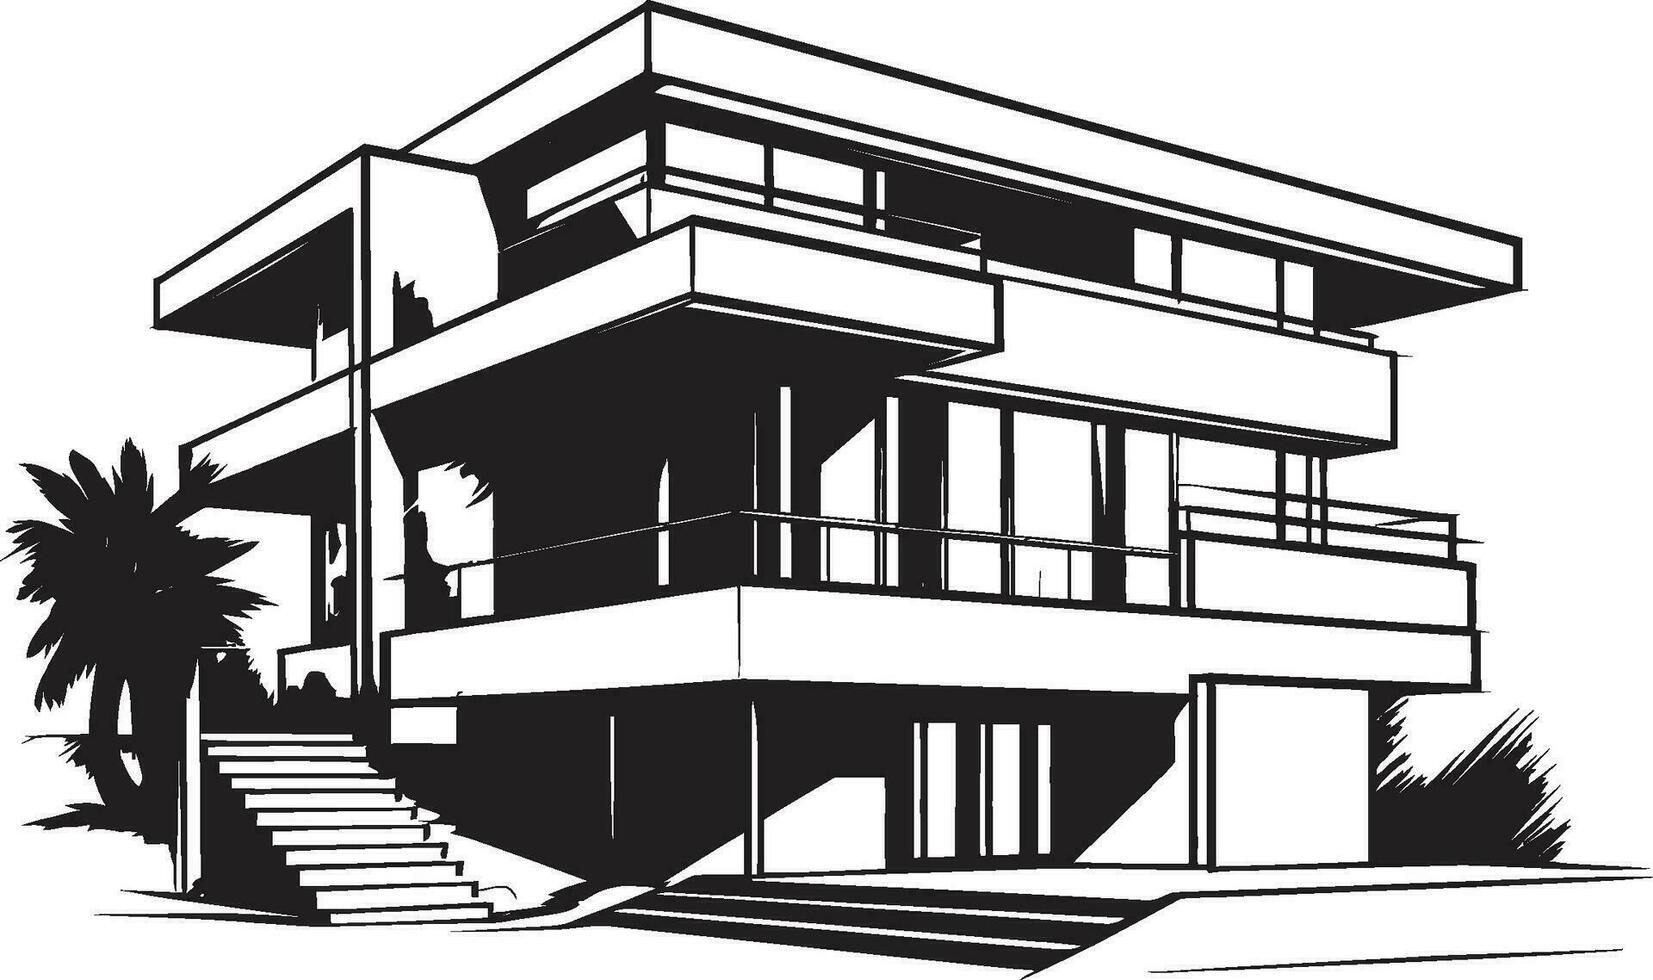 trendig urban boning villa översikt symboliserar stad raffinemang stadsbild villa intryck svart översikt emblem av urban levande vektor